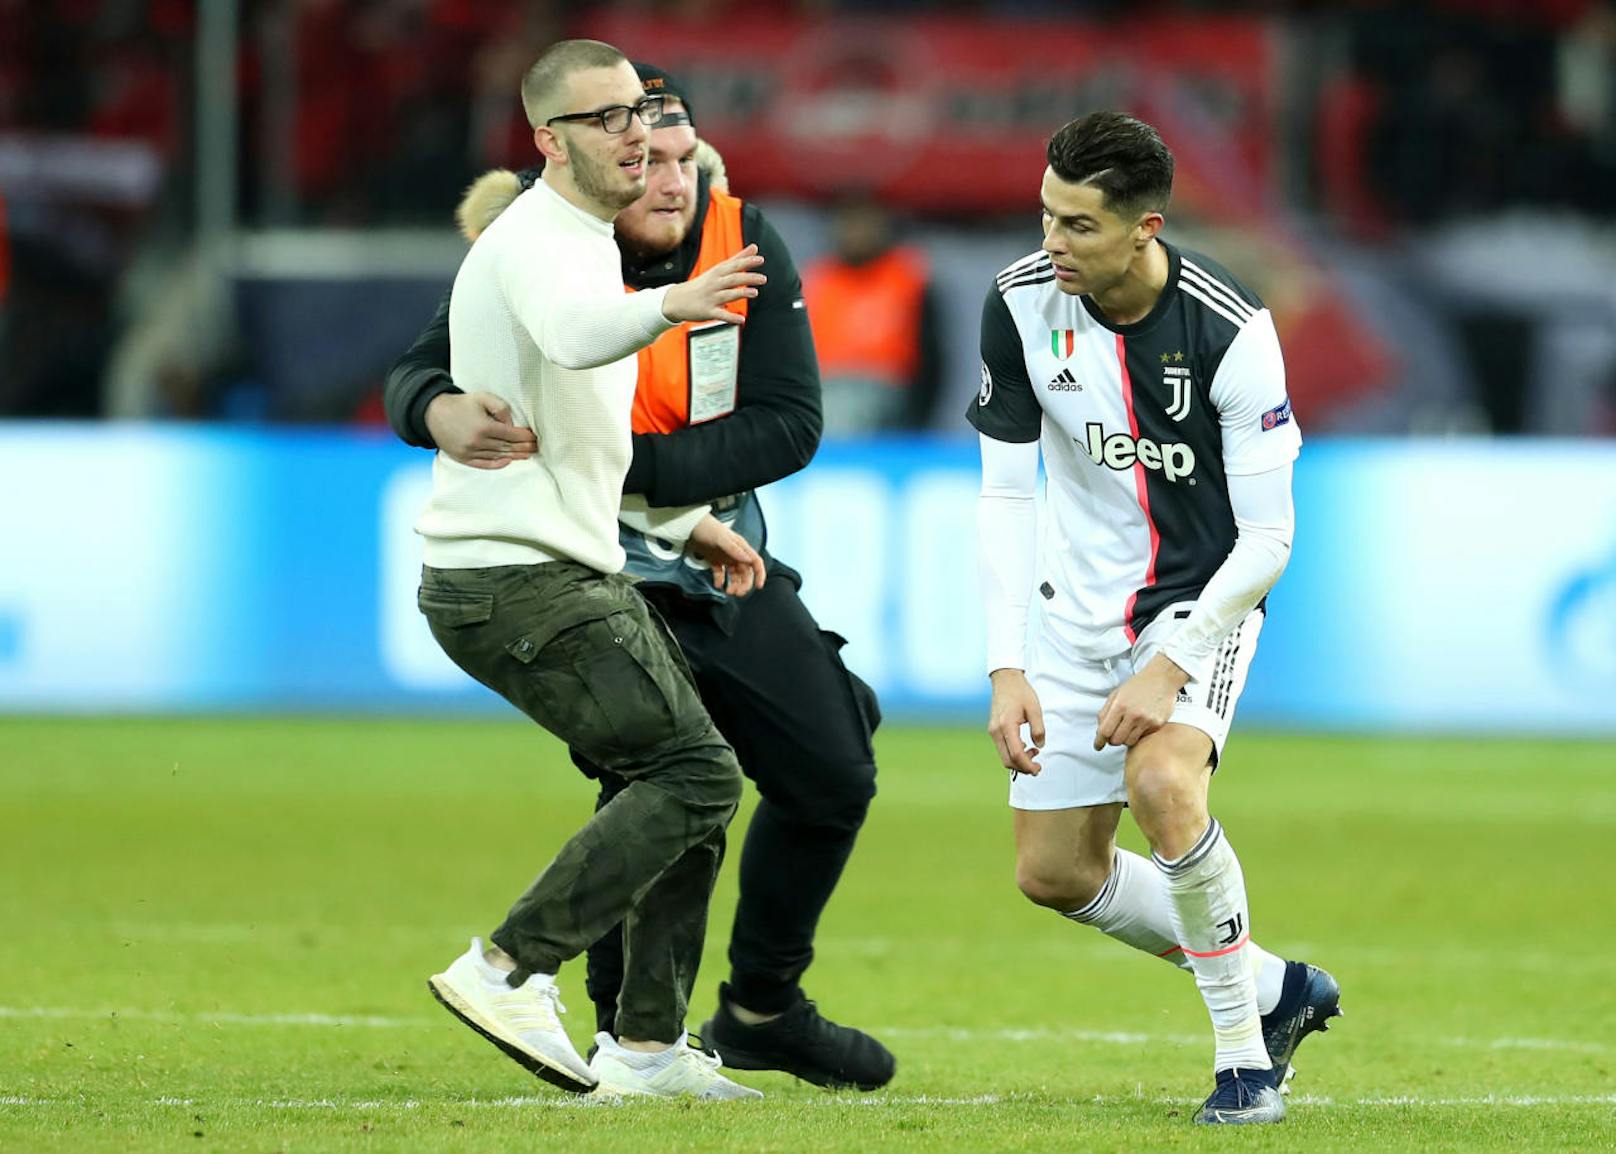 Cristiano Ronaldo wurde in Leverkusen gleich von mehreren Flitzern "gejagt". Nach dem Spiel sollte ihm der Kragen platzen.